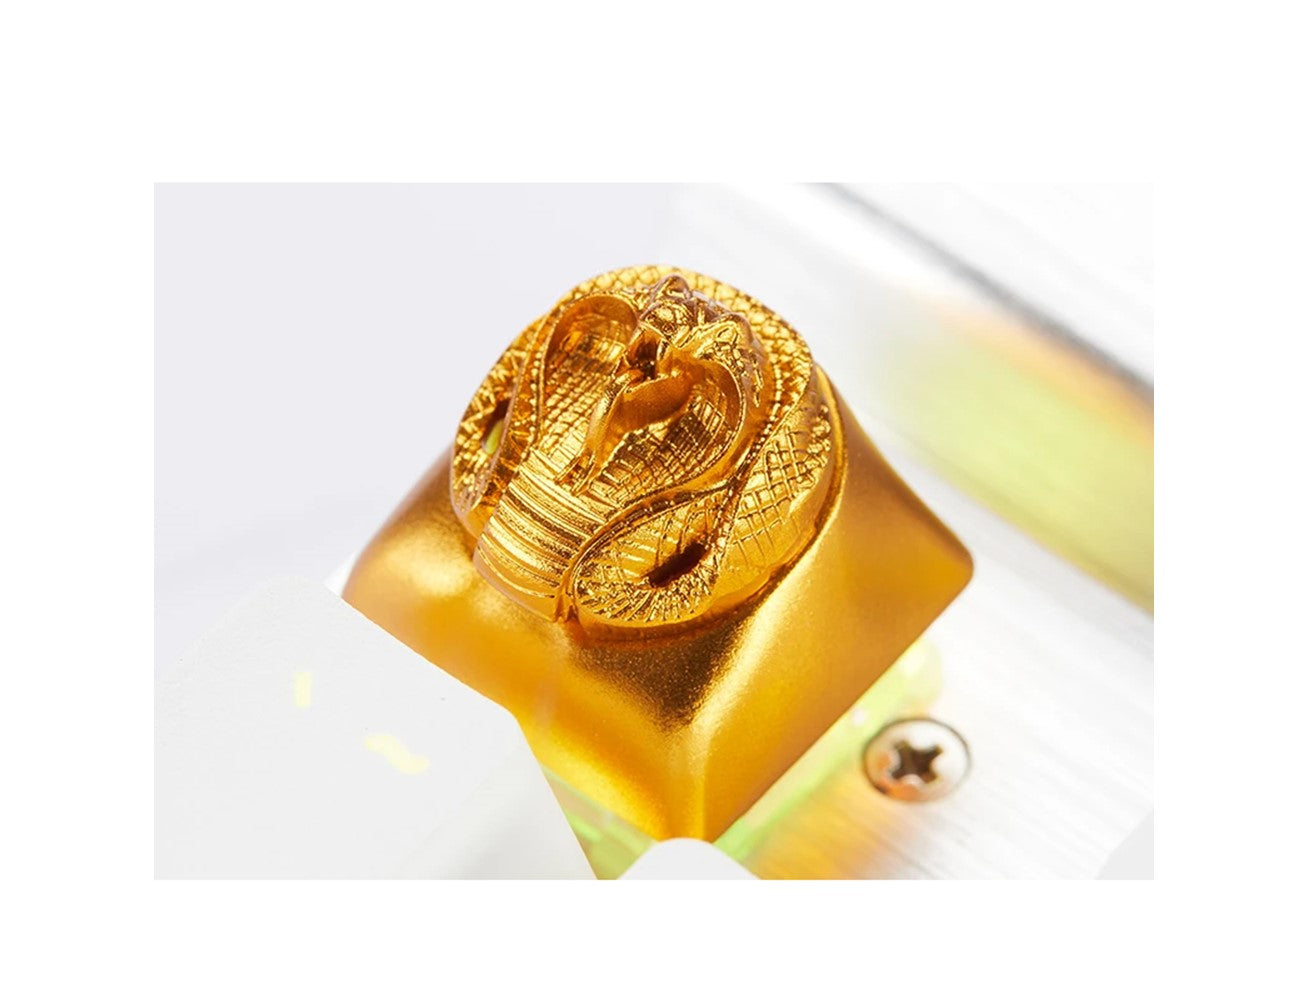 زوموبلس مفاتيح واستنساخات الكوبرا الذهبية Cherry MX مخصصة ثلاثية الأبعاد، غطاء مفاتيح معدني للعبة والفيلم مع نقش CNC (حجم 1u) - ذهبي